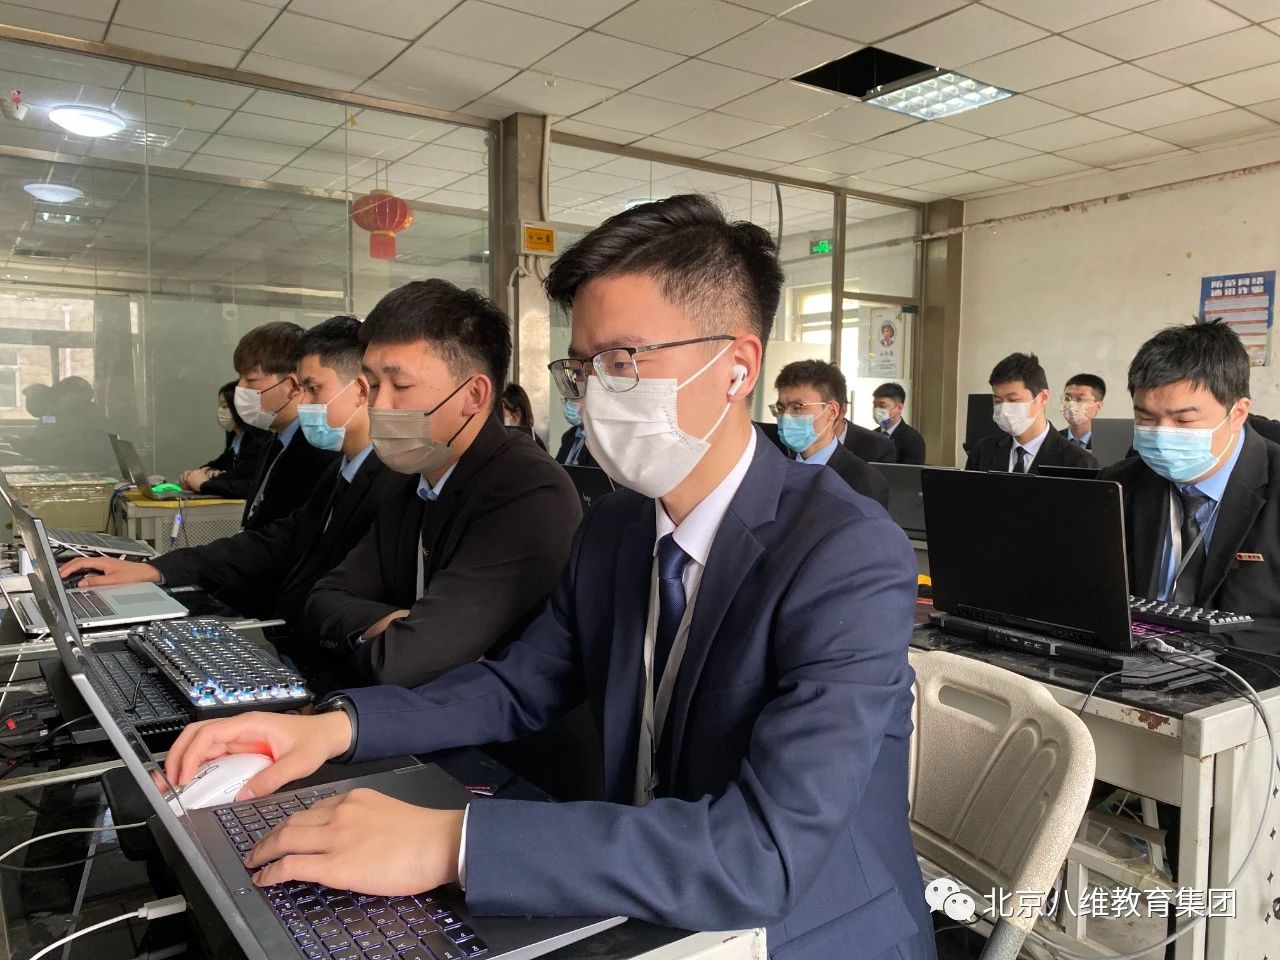 北京八维教育培训学校网络工程专业专注于网络运维技术精英人才培养